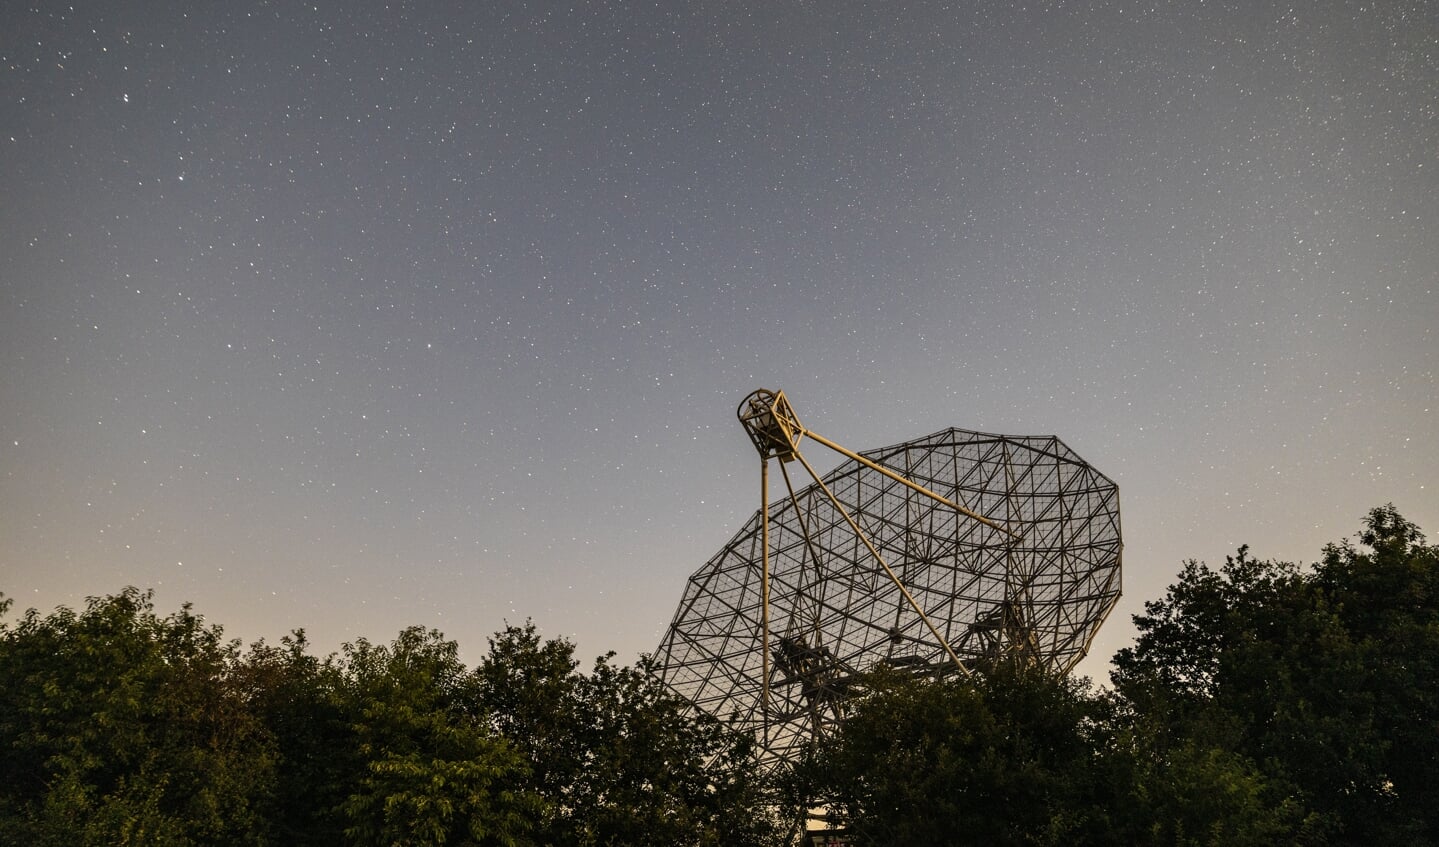 De oudste draaibare radiotelescoop ter wereld, aan de rand van het natuurgebied Dwingelderveld. 